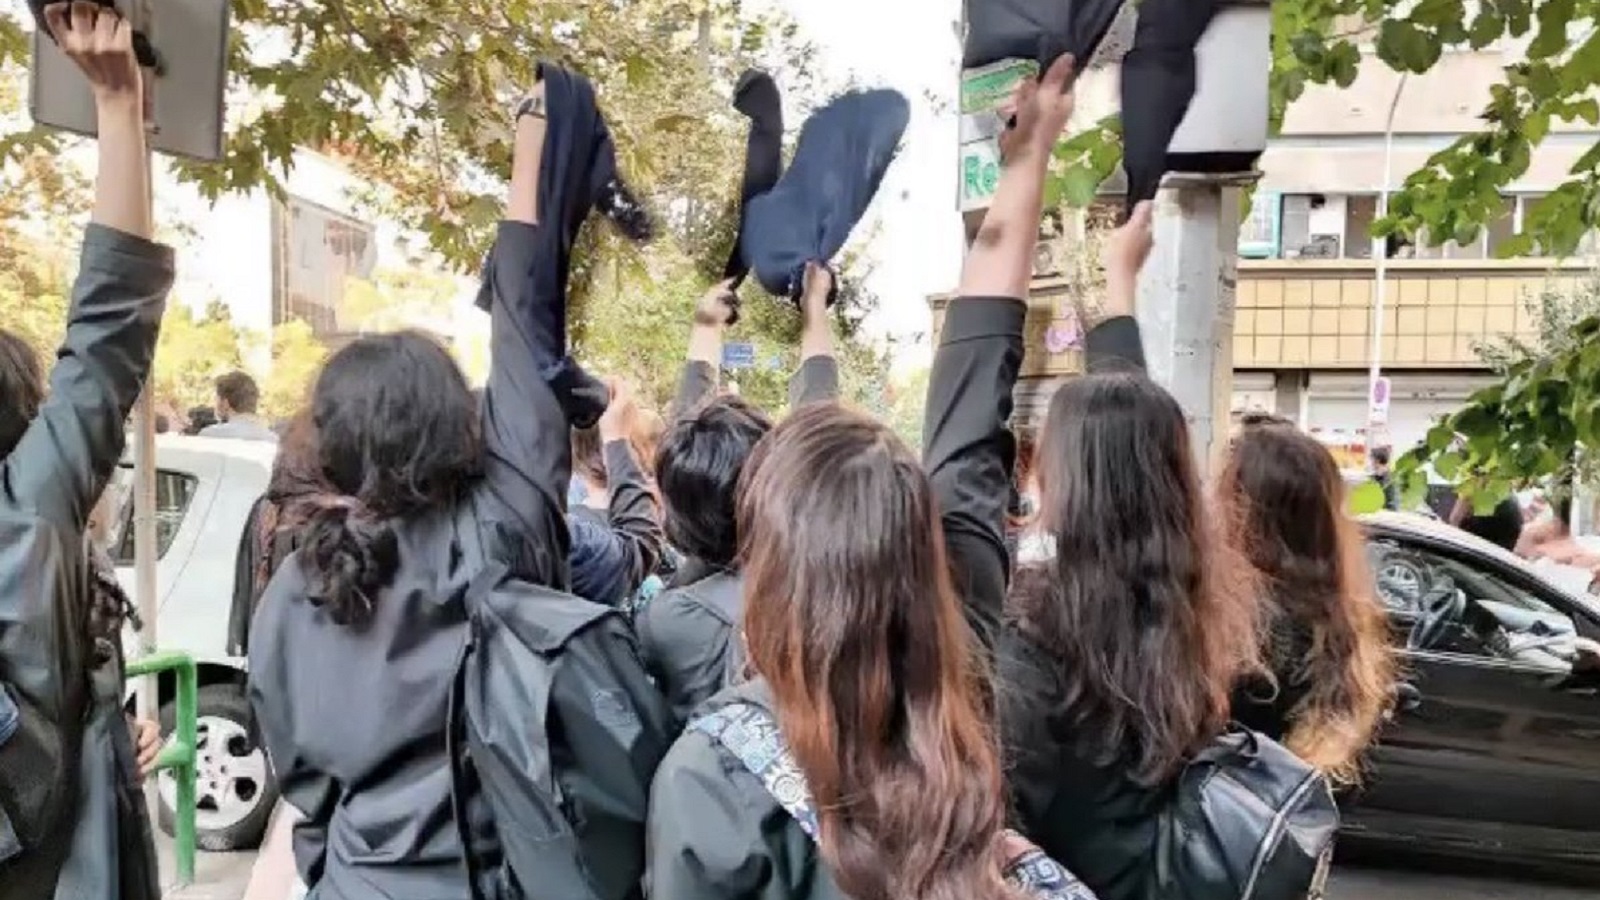 إيران:دعوات للتحرك في يوم الطالب..والسلطة تلاحق مطلوبين في الخارج